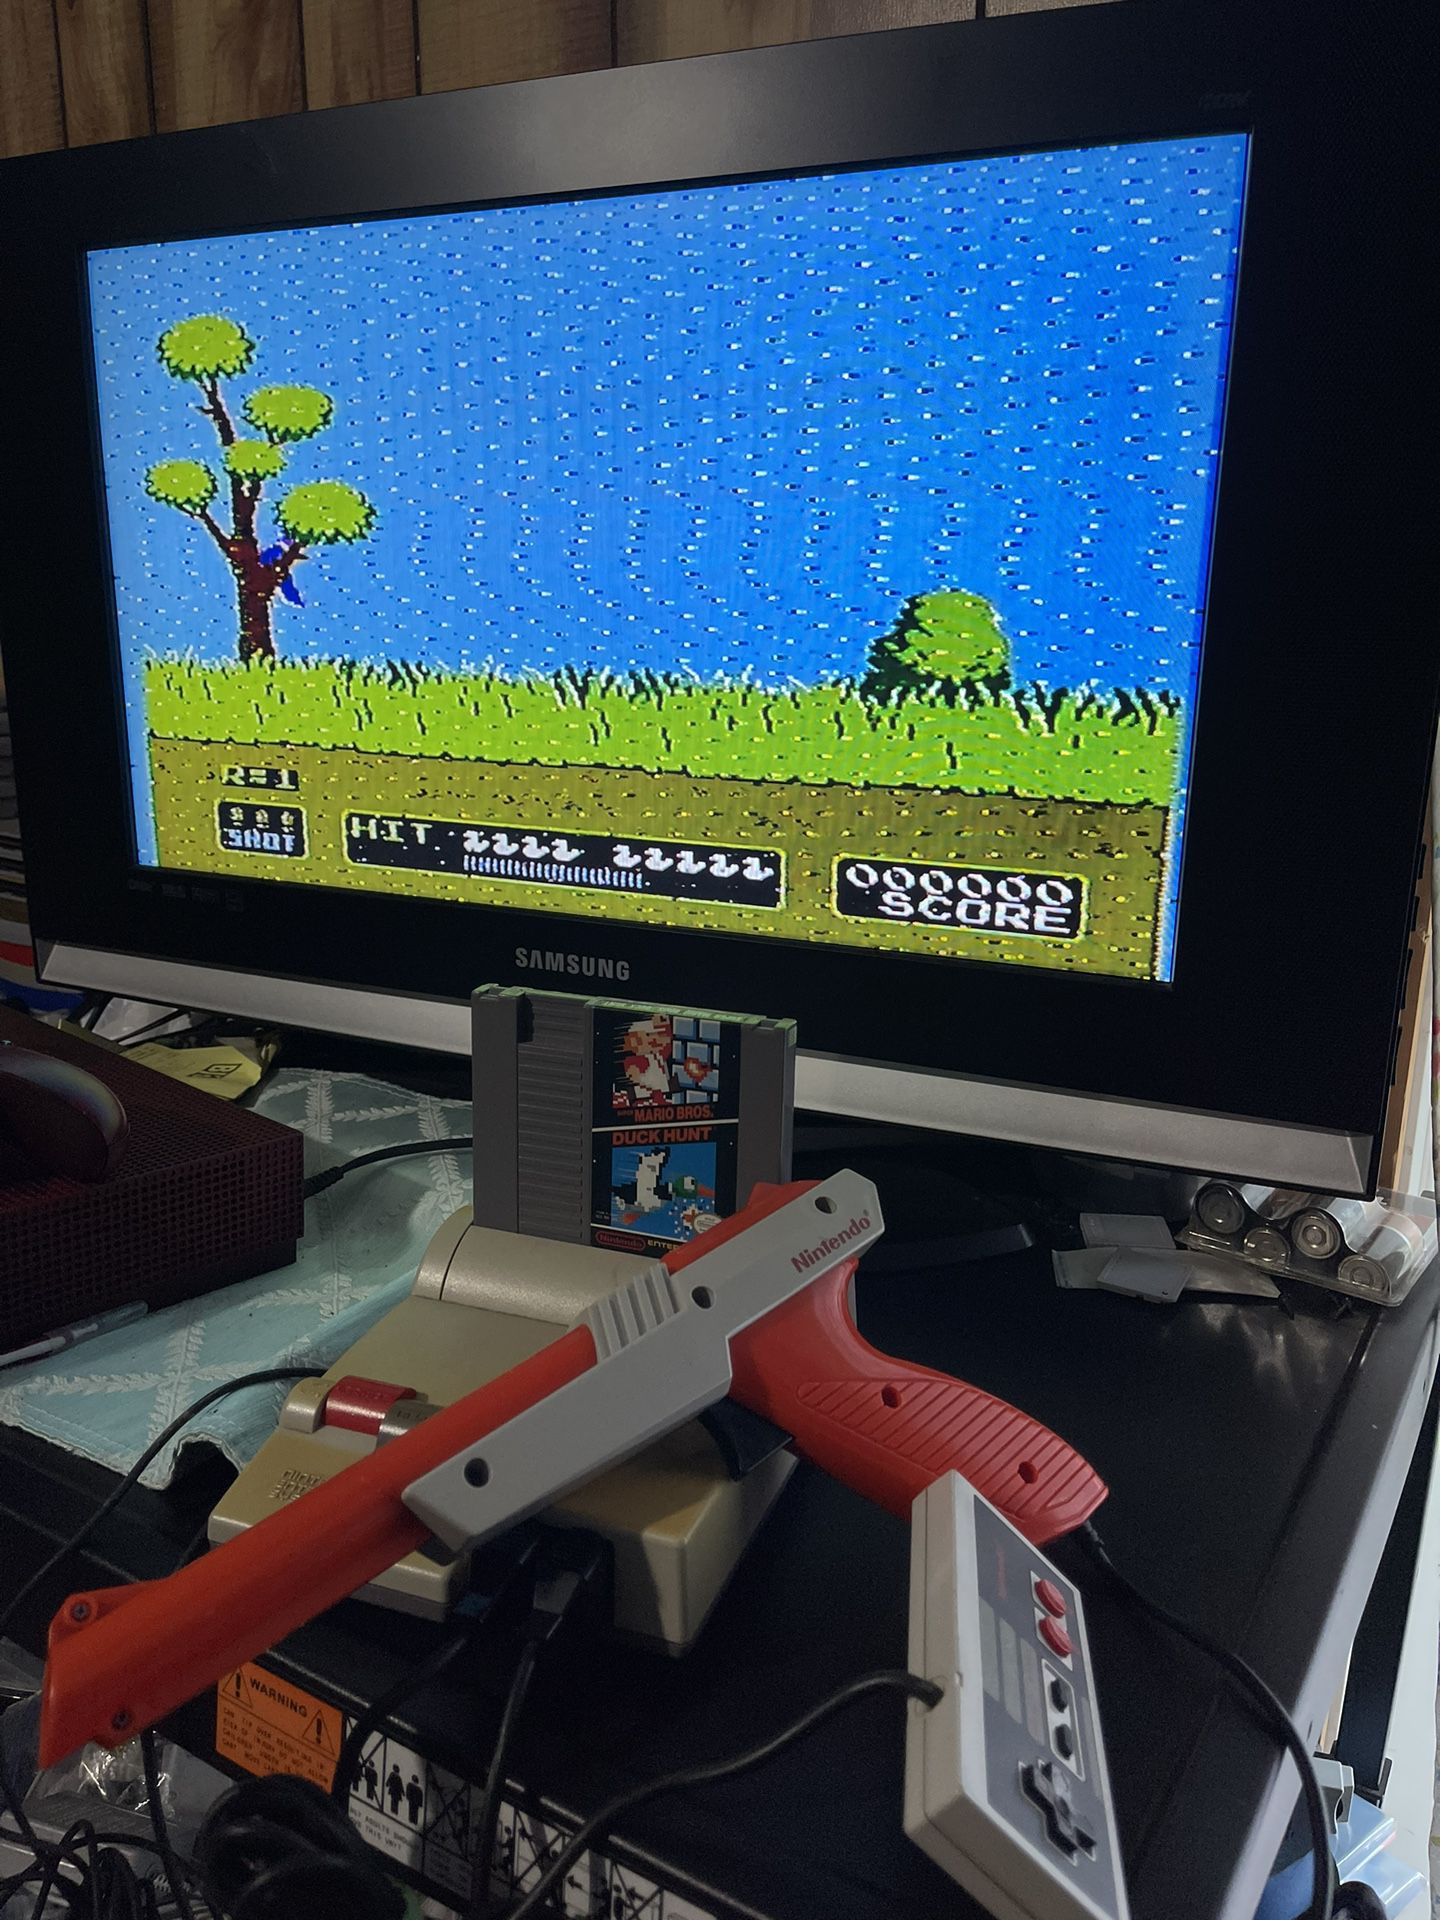 Original Nintendo NES 101 Top Loader (super Mario Game) Zapper An Controller